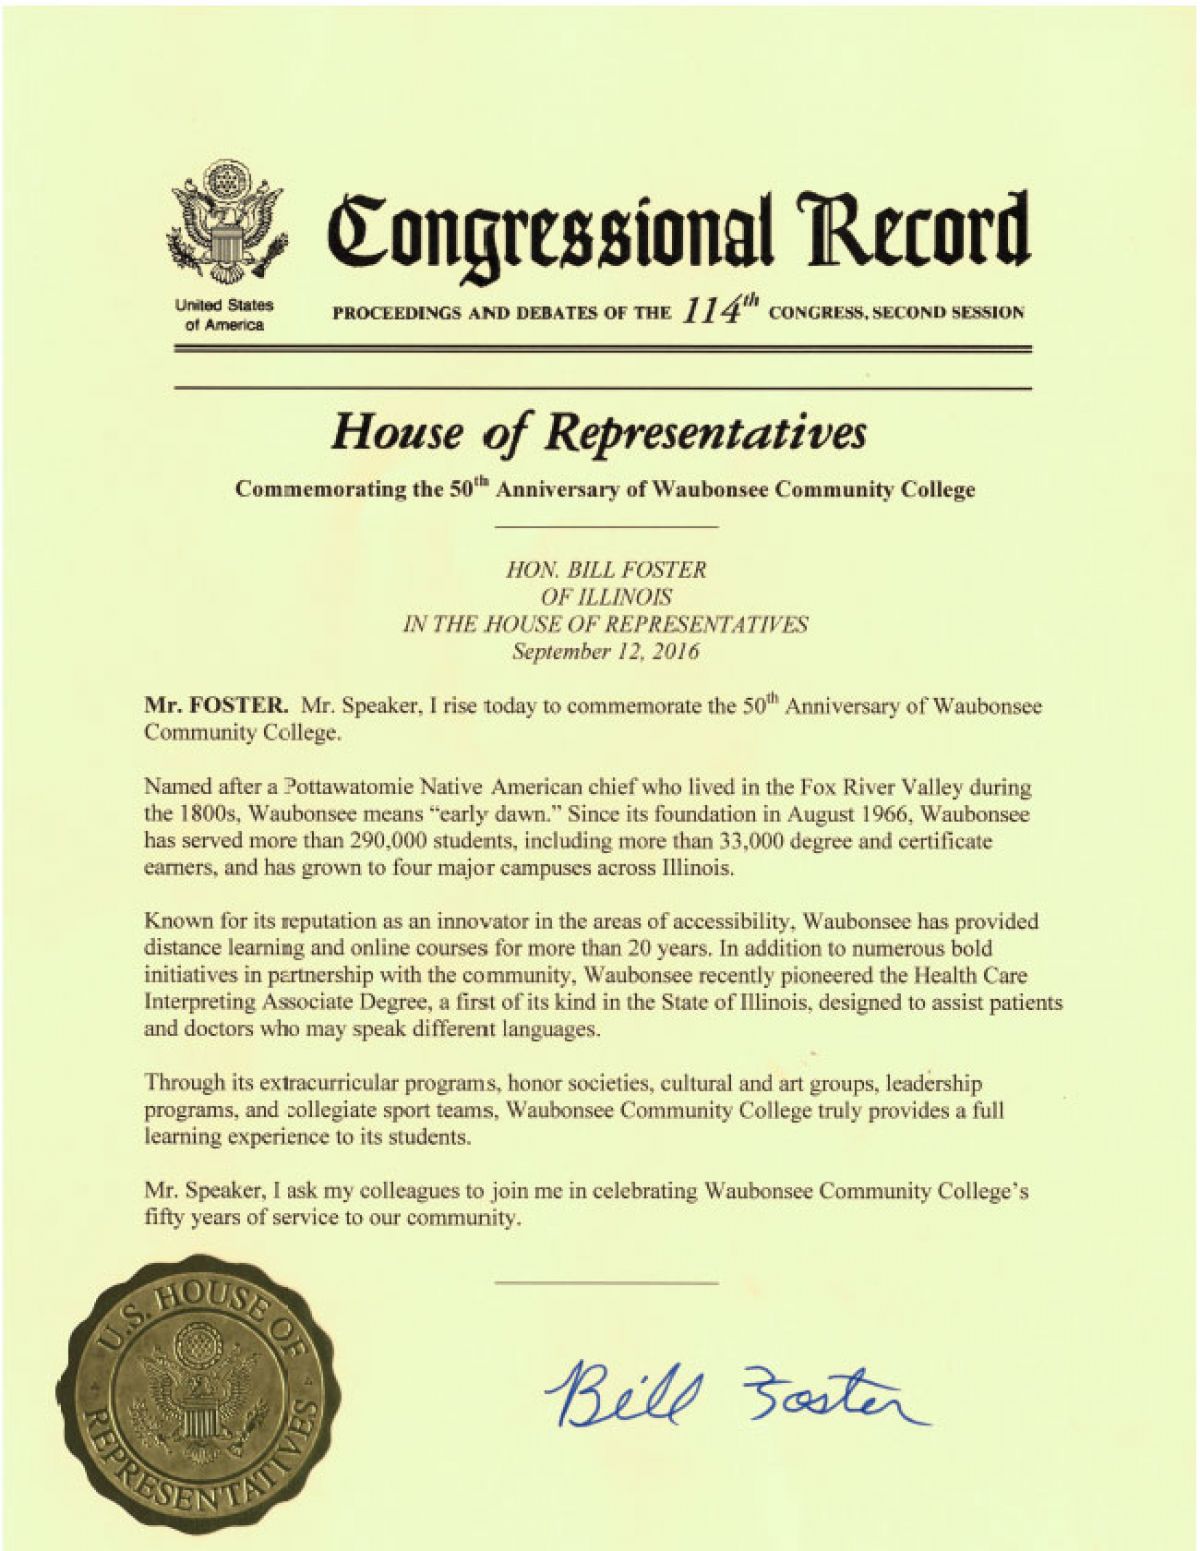 Congressional Record - Bill Foster celebrating 50th anniversary